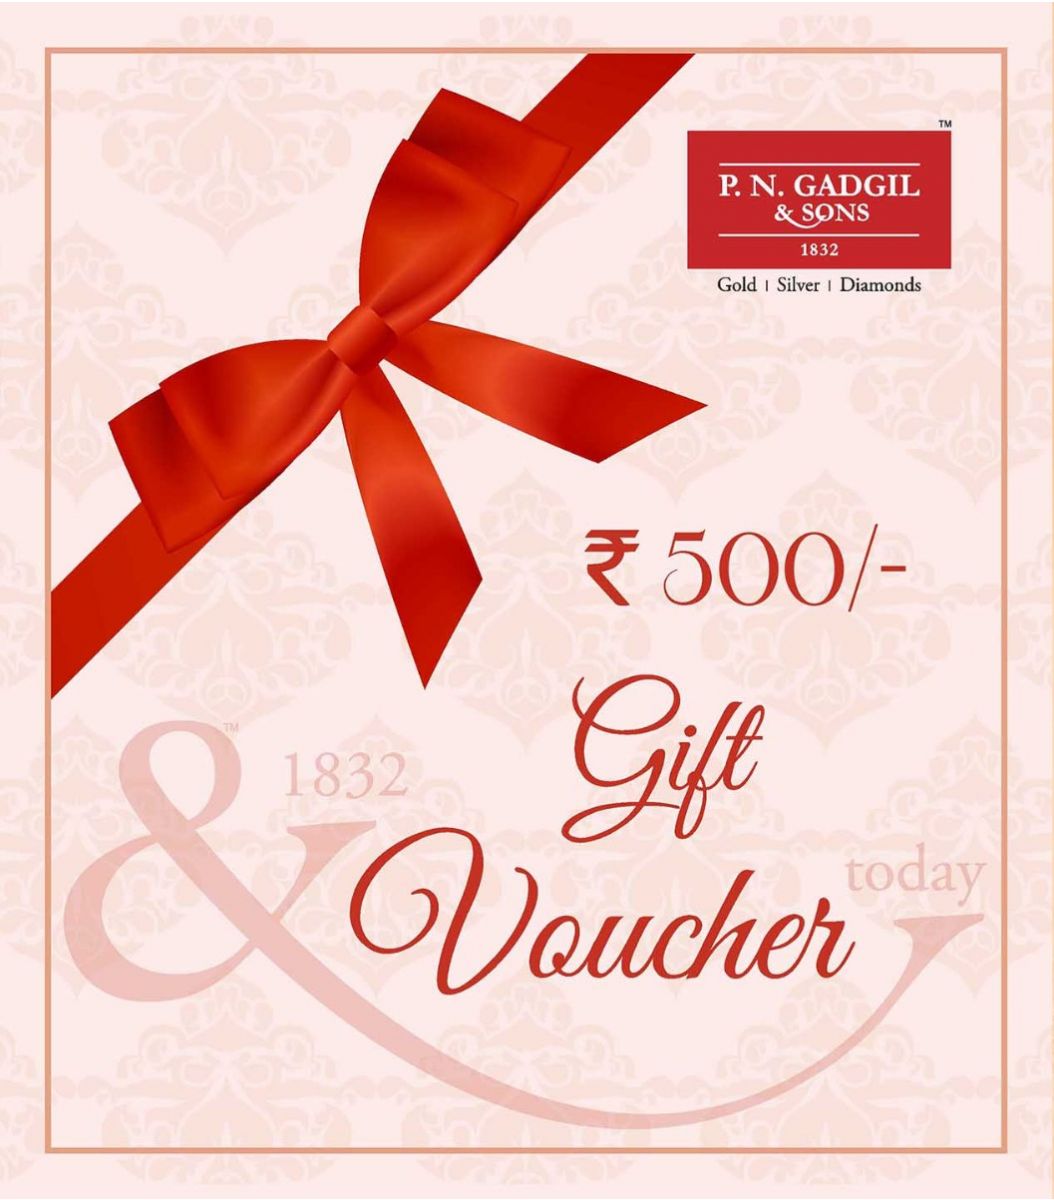 Gift Voucher ₹500